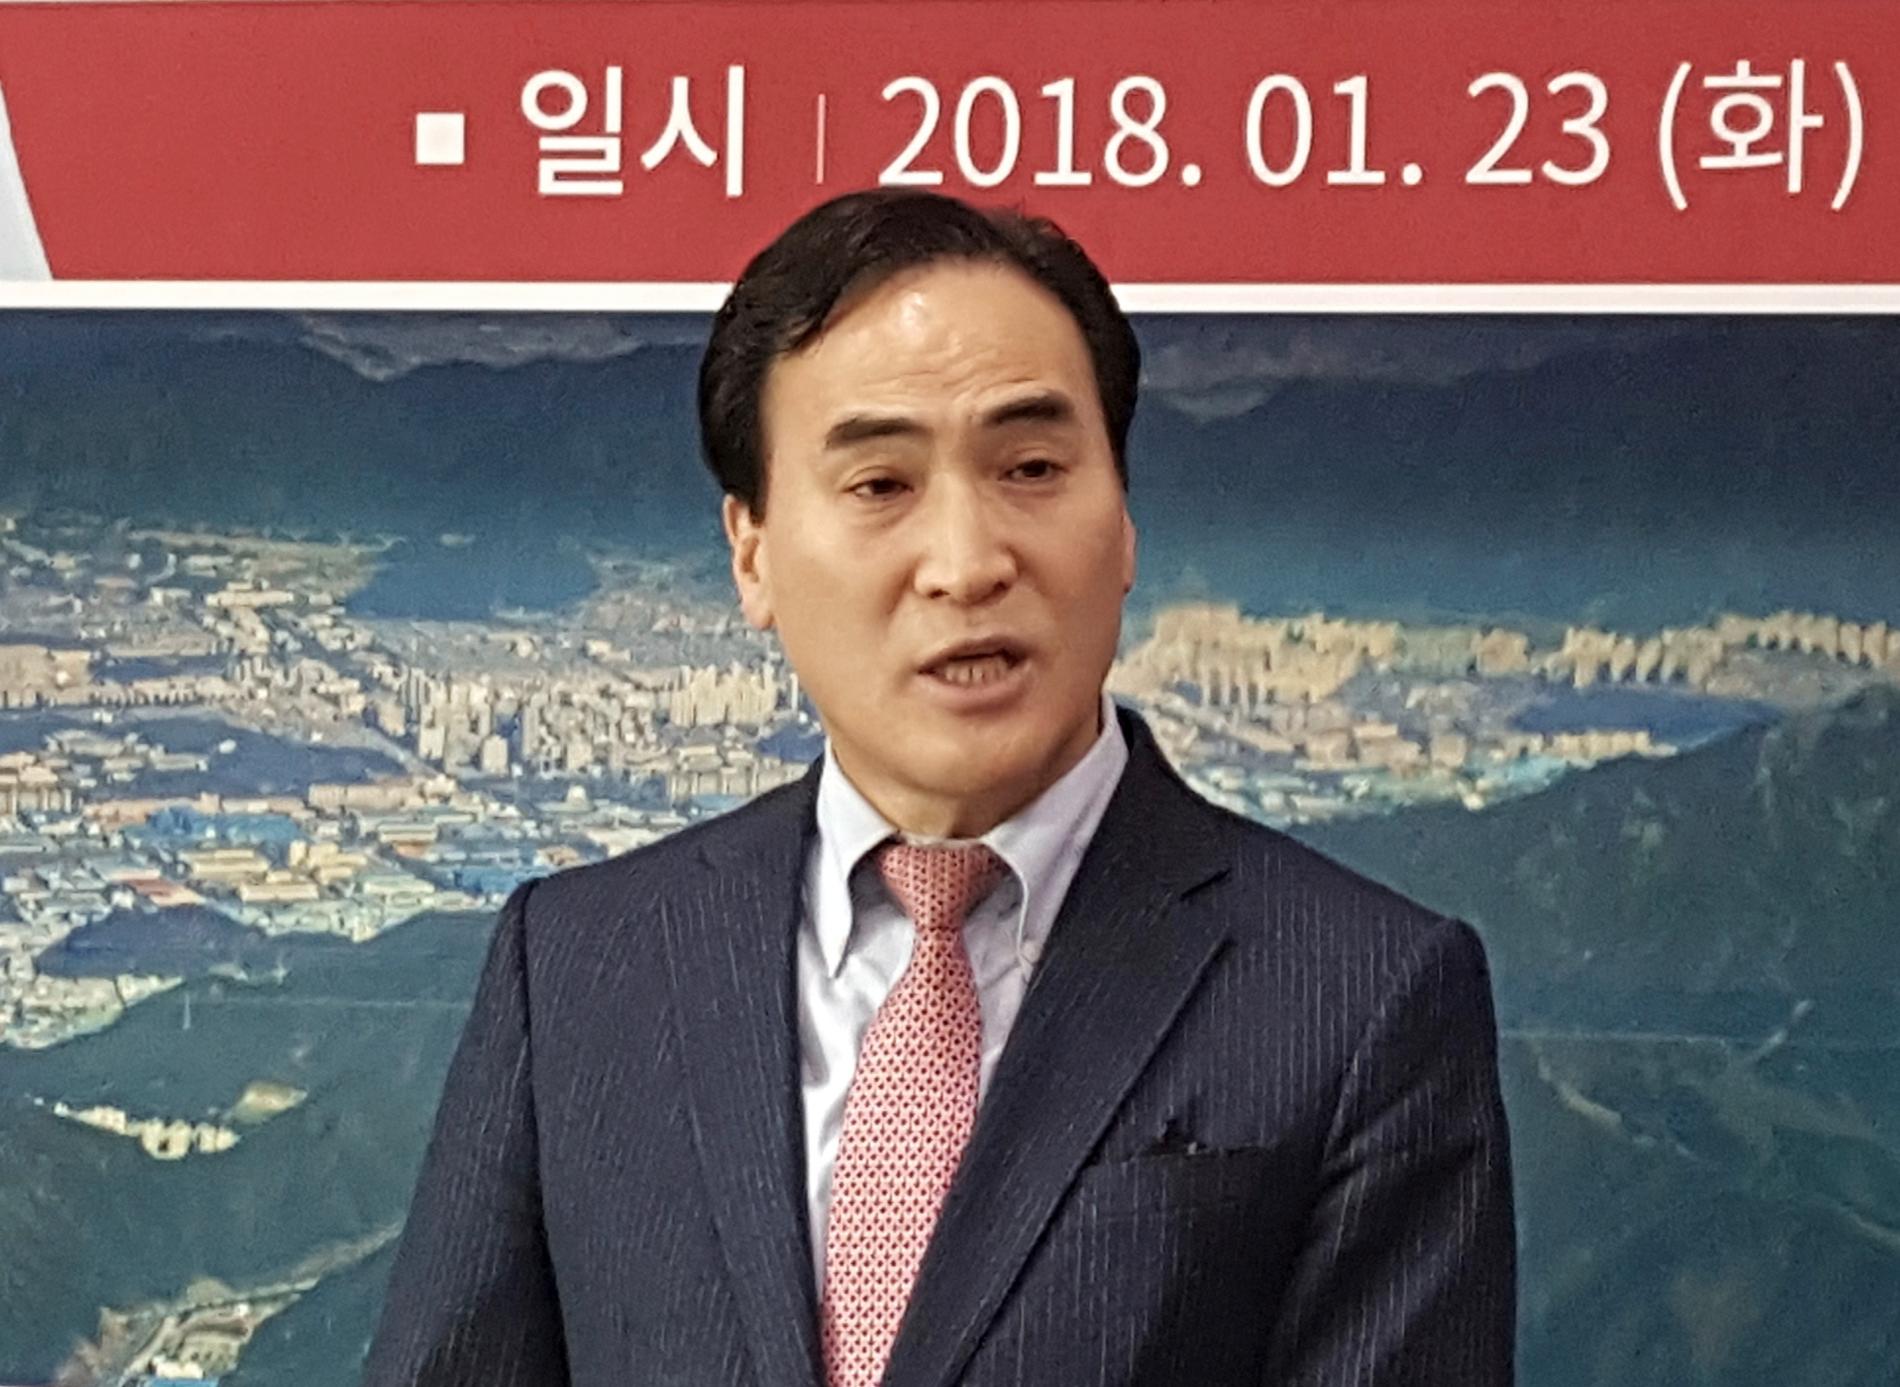 Sydkoreanen Kim Jong-Yang valdes av Interpols generalförsamling till den internationella polisorganisationens ordförande under en omröstning i Dubai. Arkivbild.